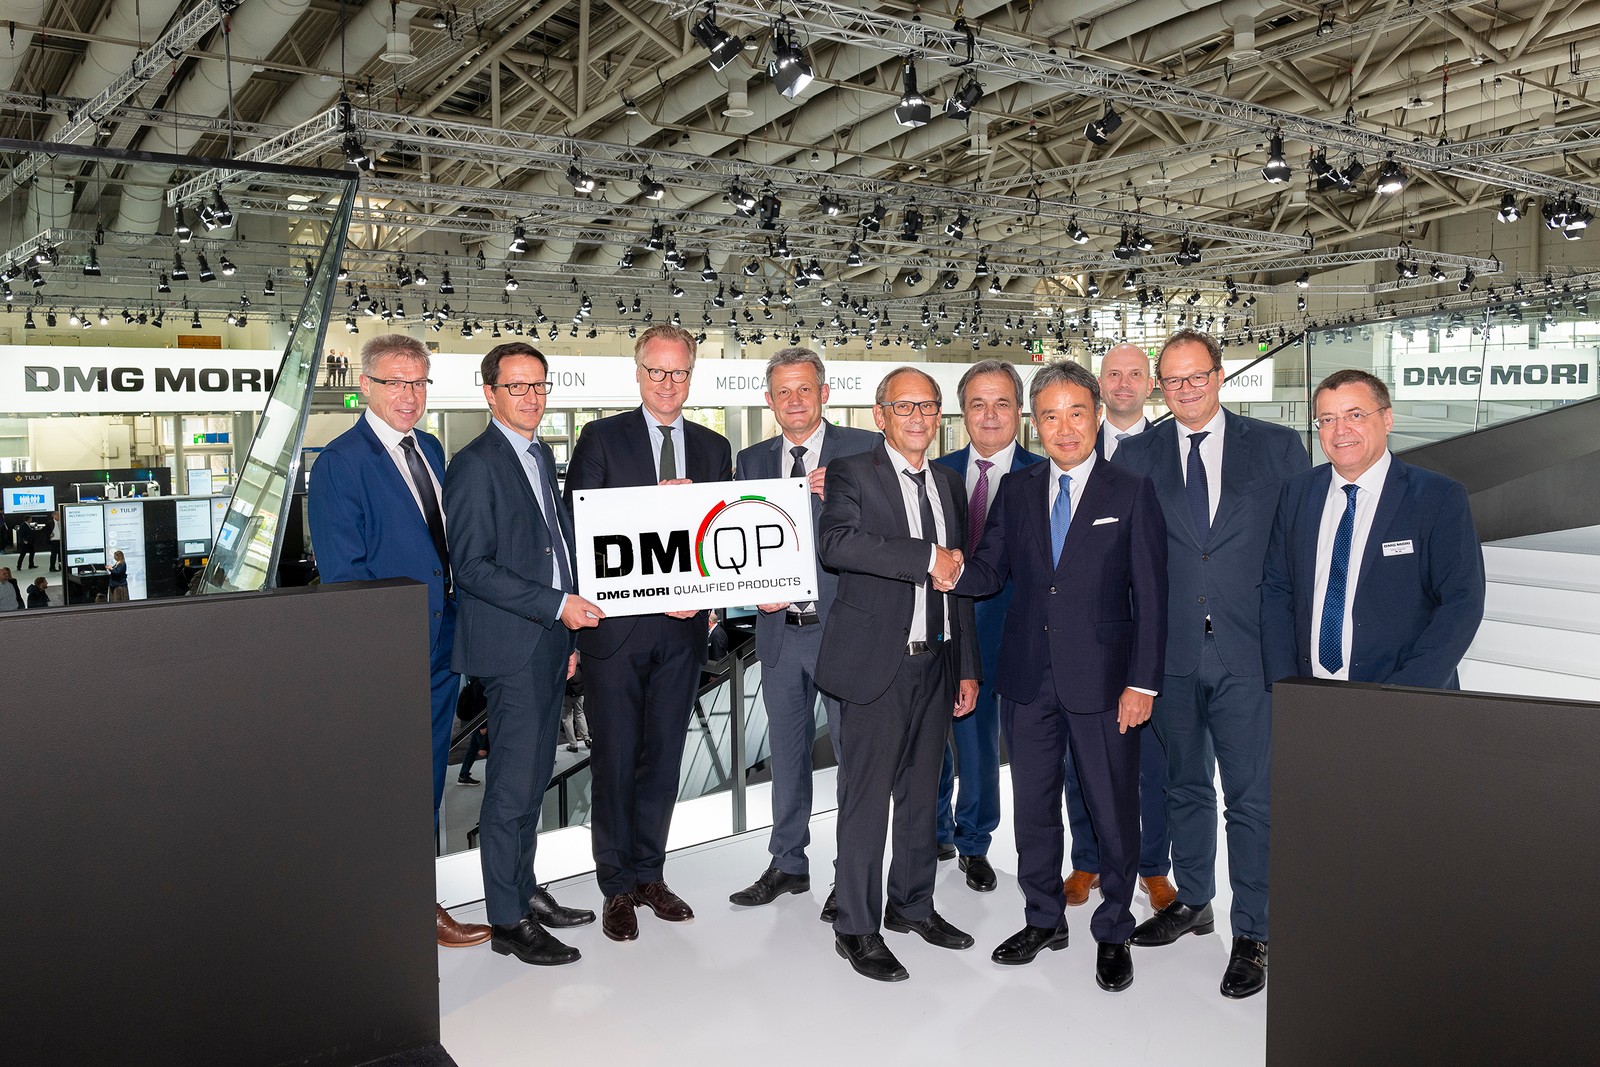 Die Zimmer Group erhielt auf der EMO den begehrten DMQP-Award. Damit ist die Handhabungstechnik nun offiziell ein von DMG Mori anerkanntes Qualitätsprodukt.